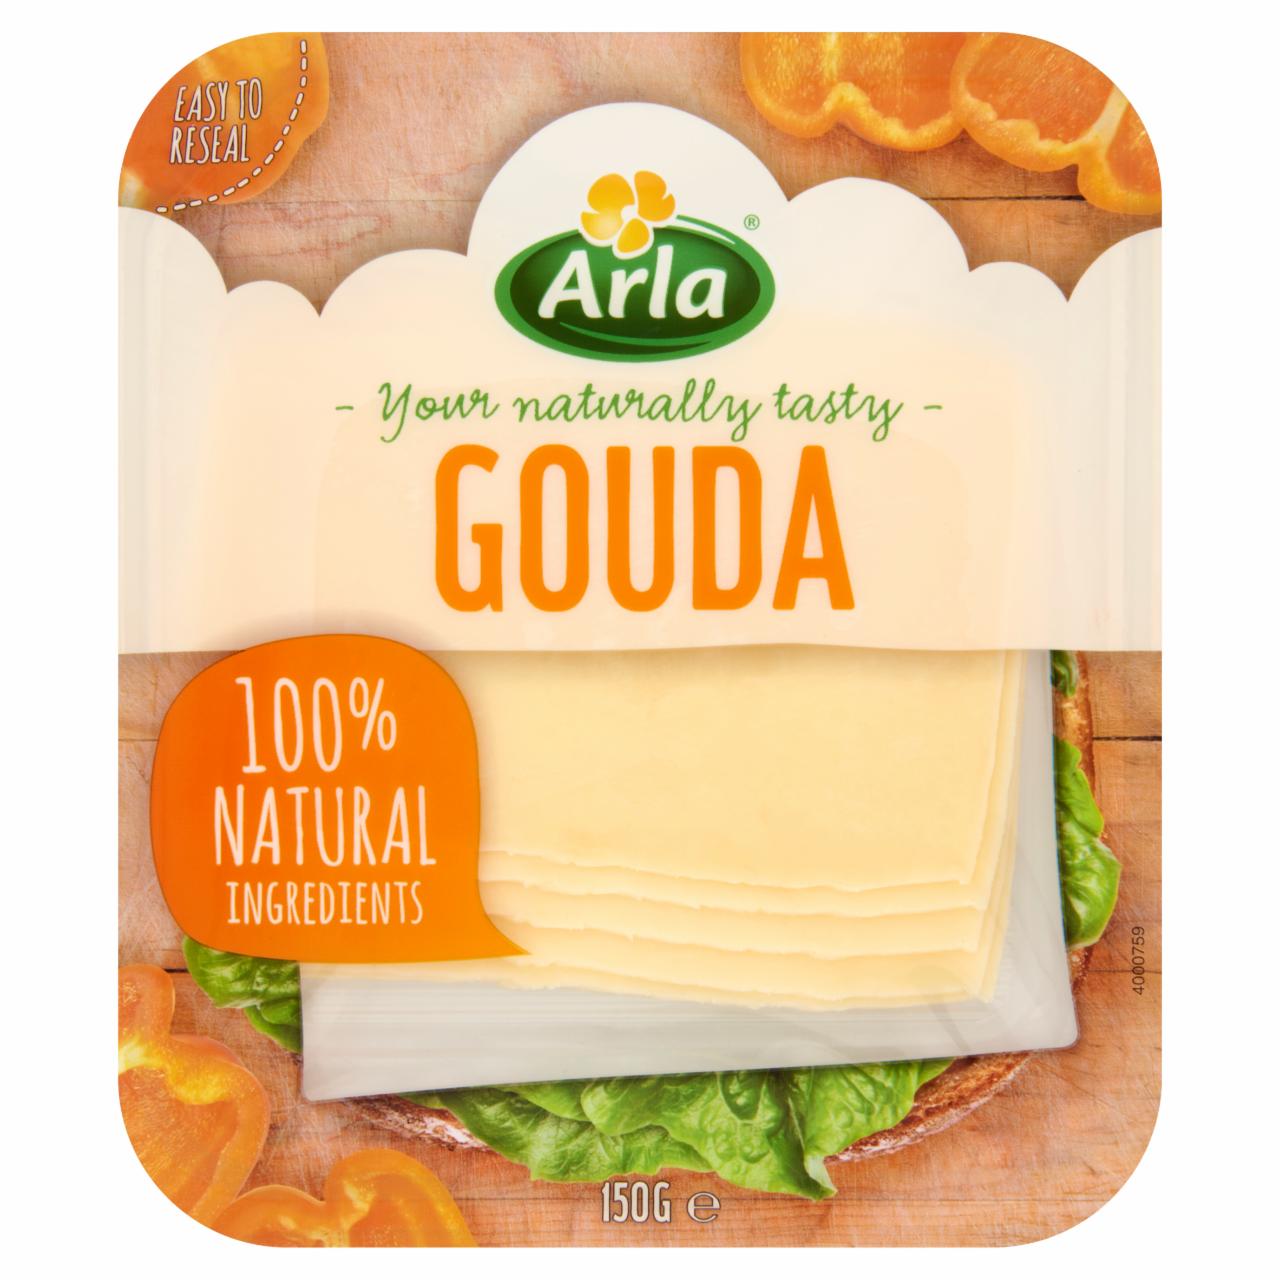 Képek - Arla zsíros, félkemény, szeletelt gouda sajt 150 g